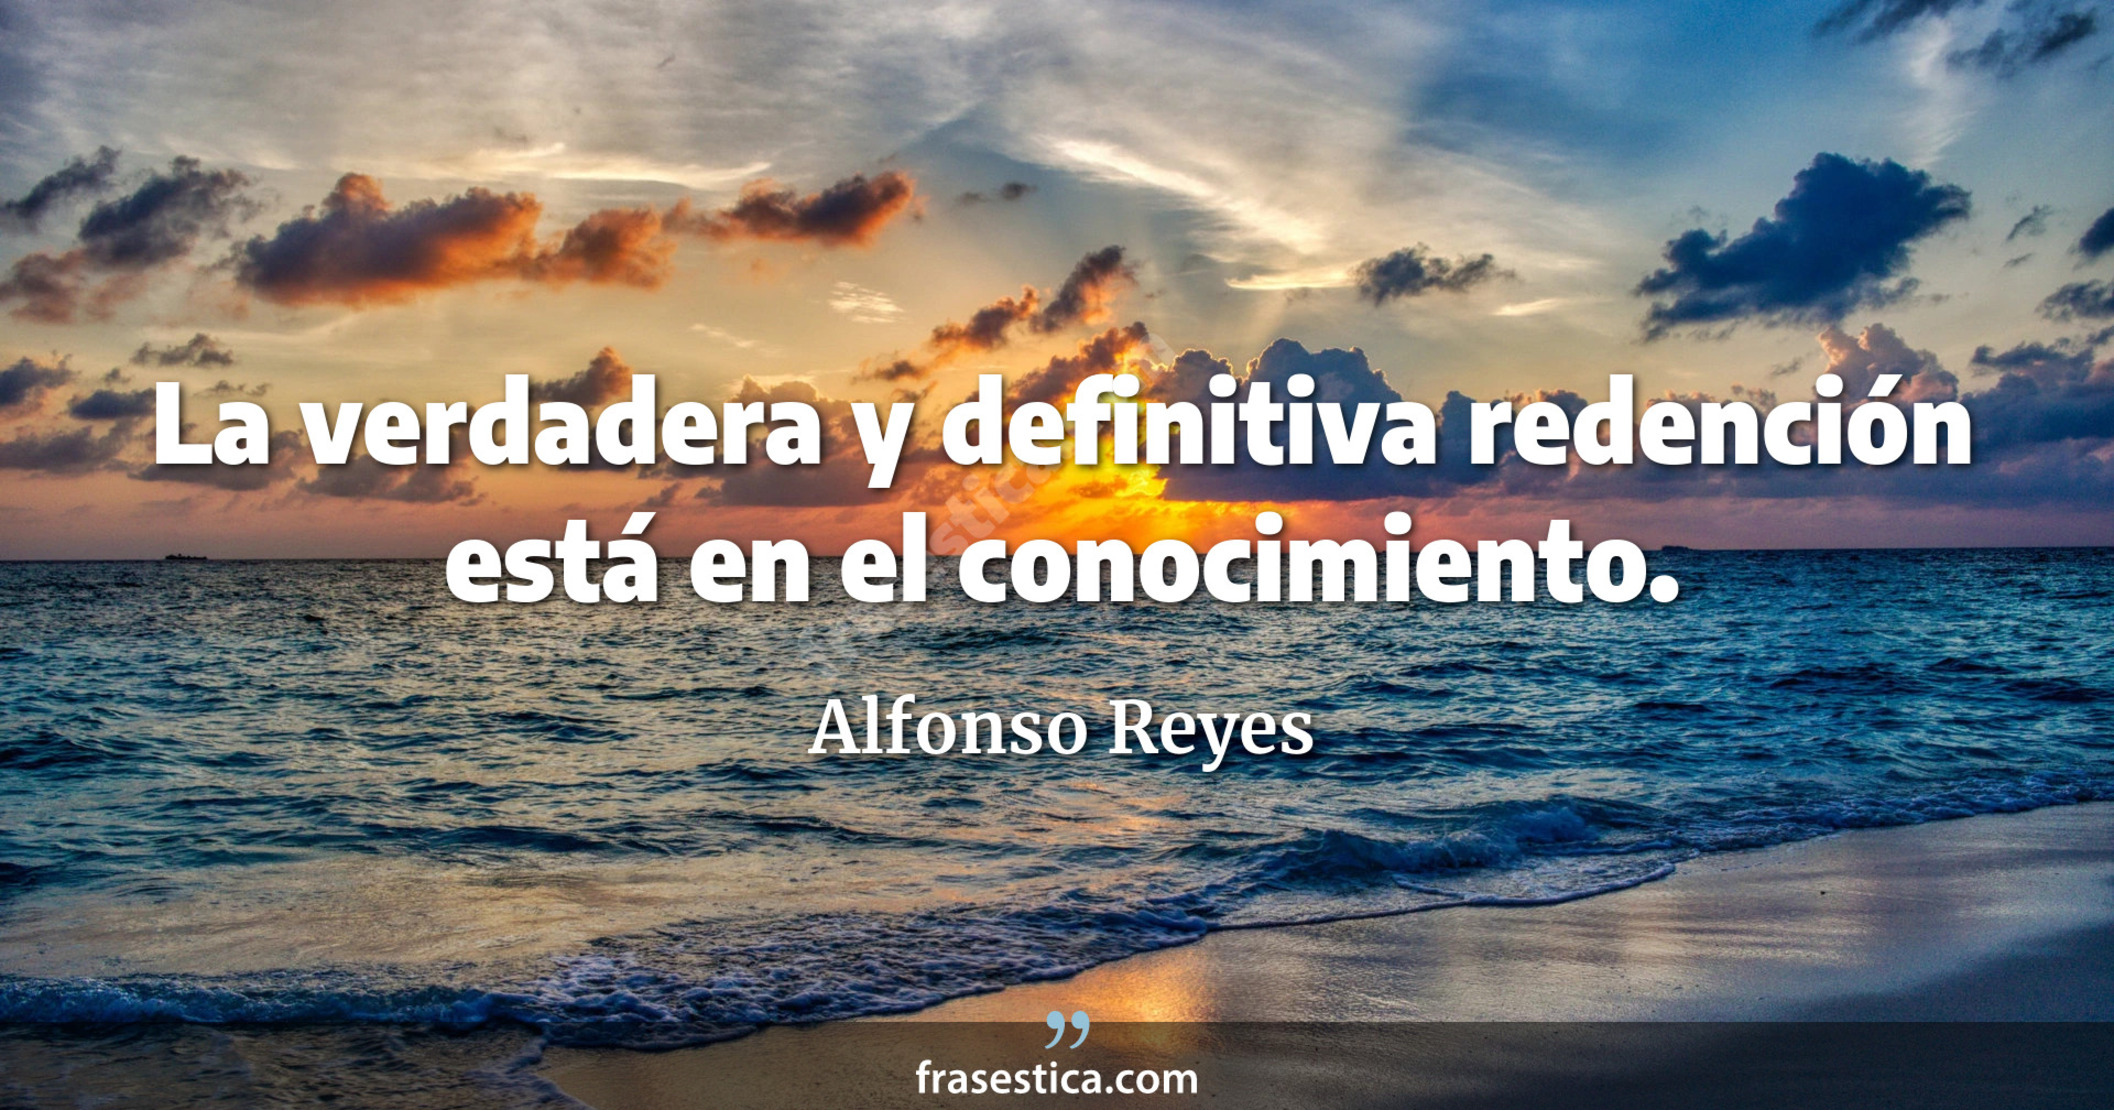 La verdadera y definitiva redención está en el conocimiento. - Alfonso Reyes